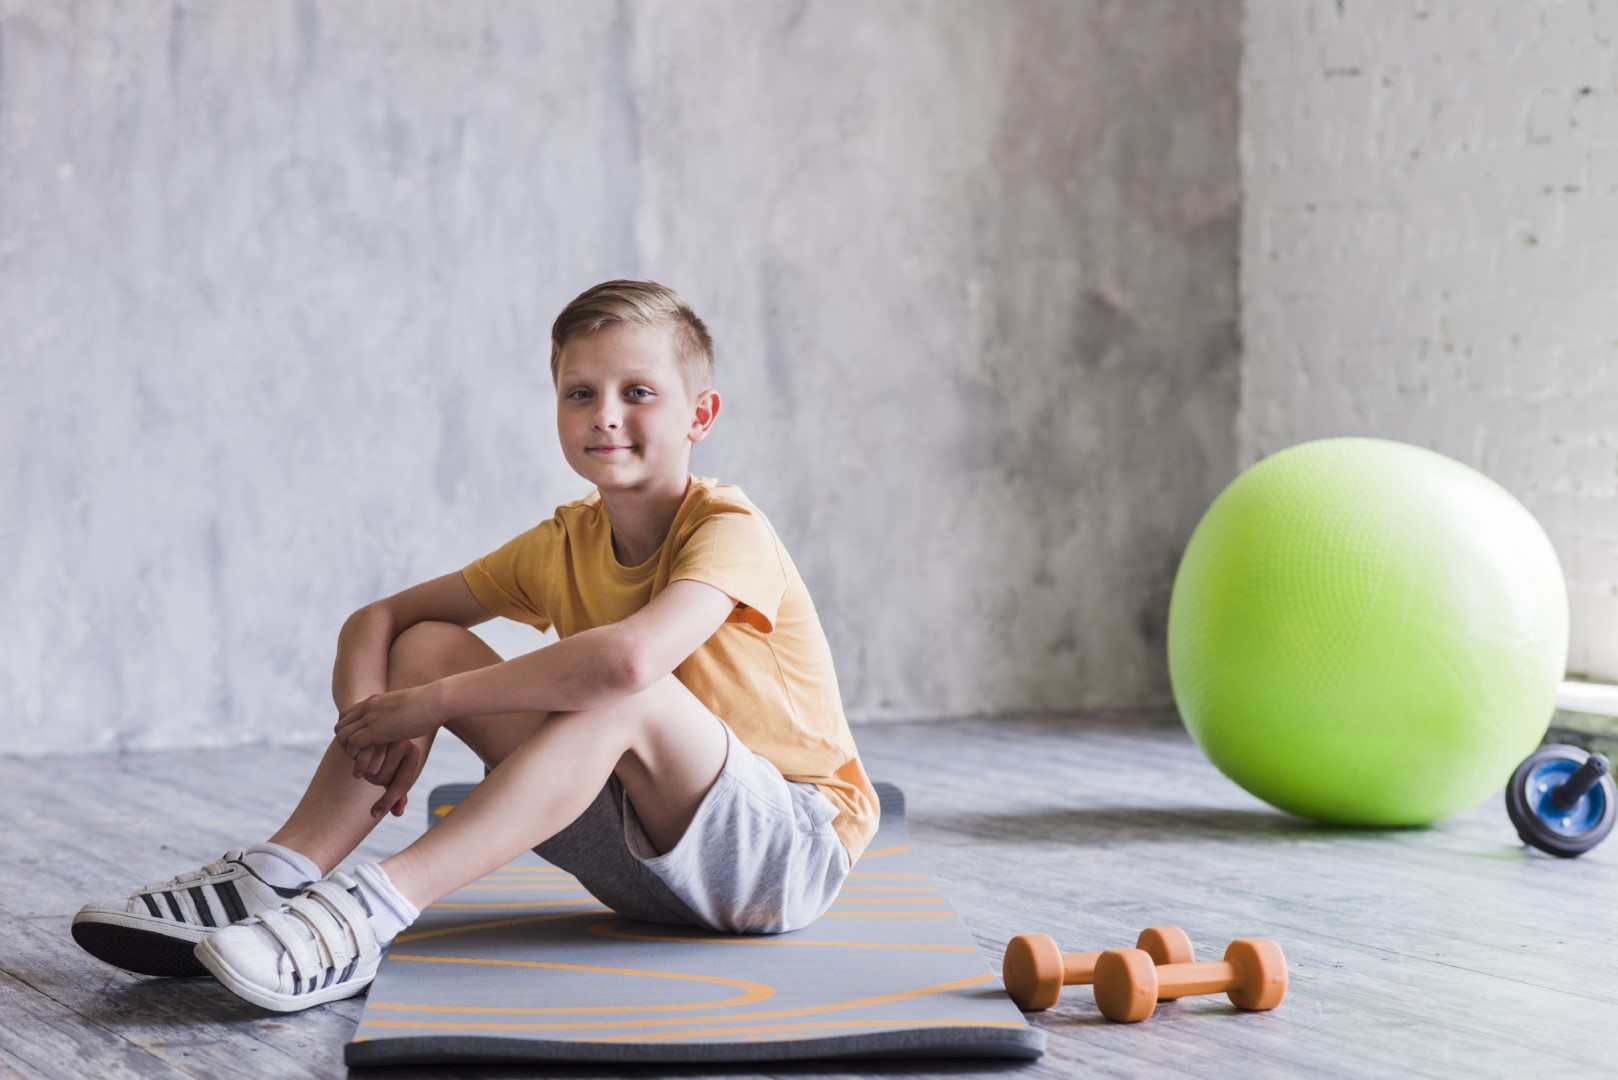 אתלטיקליניק | אימון כוח לילדים, יצחק רוזן - מאמן לשיפור יכולות גופניות